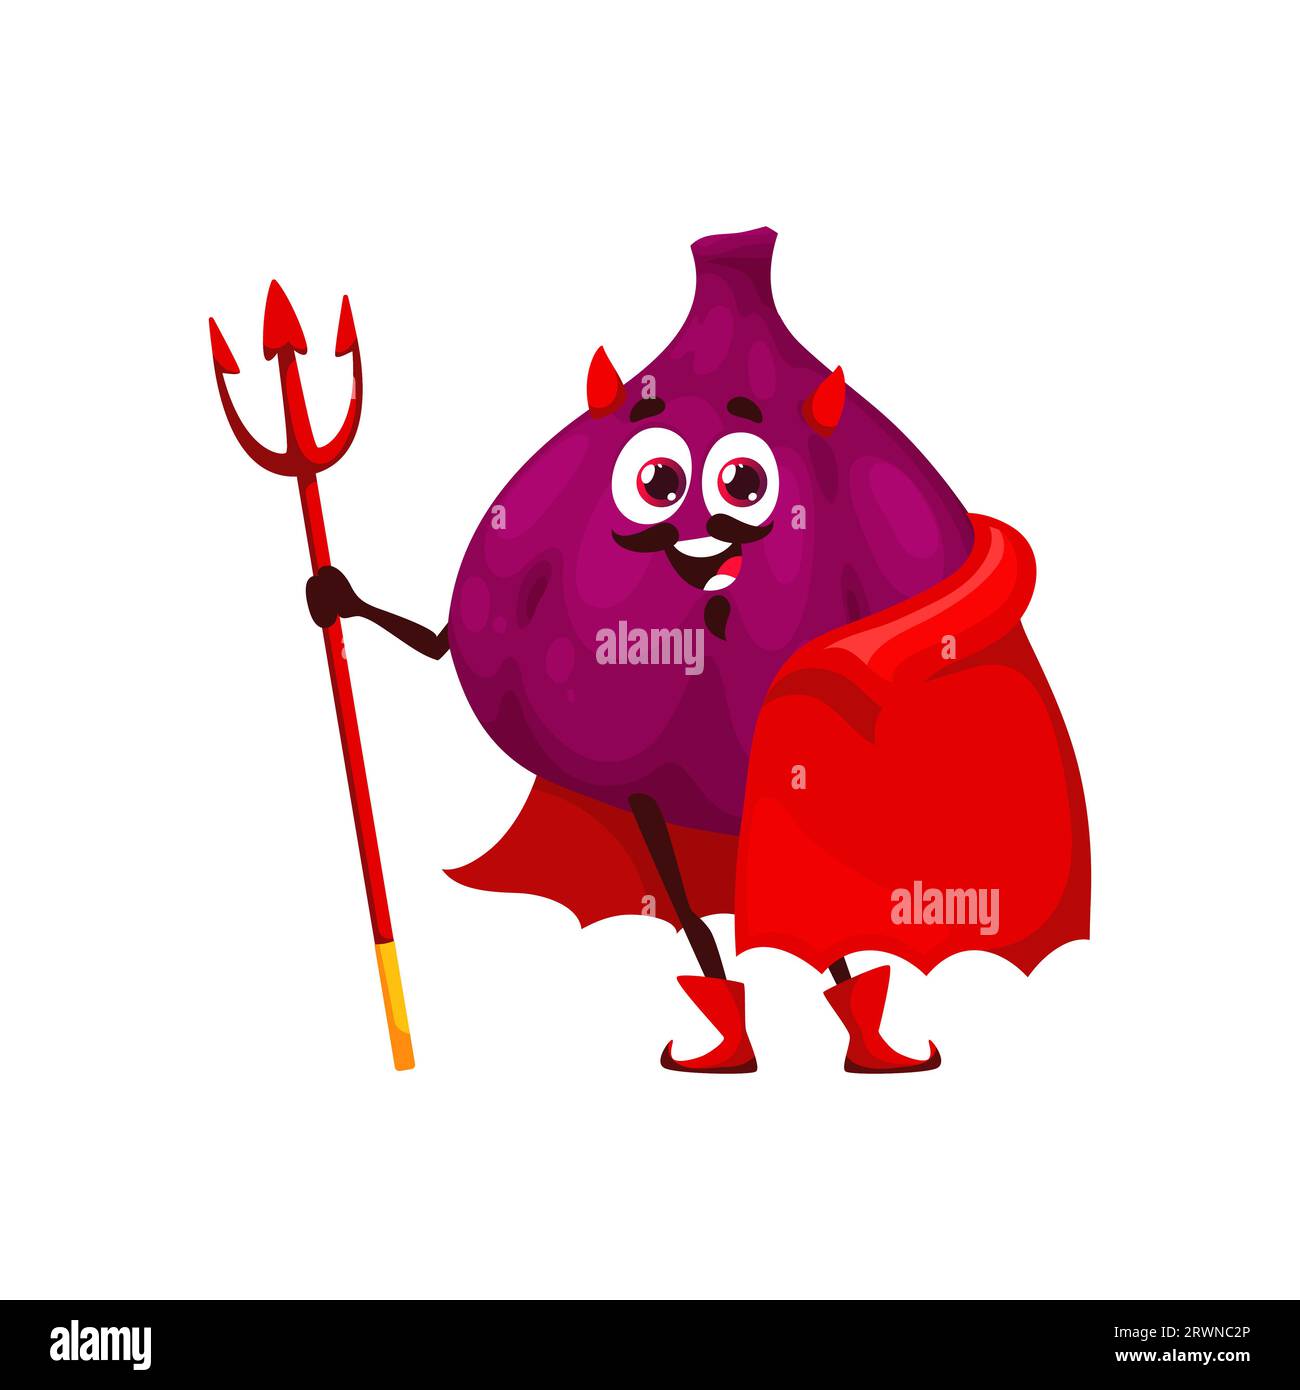 Dessin animé drôle Halloween Figs fruit personnage en costume de diable de vacances. Figue malicieuse vecteur isolée, habillée en imp ou satan, arbore un sourire effronté avec des cornes, une cape rouge, des bottes et une fourche Illustration de Vecteur